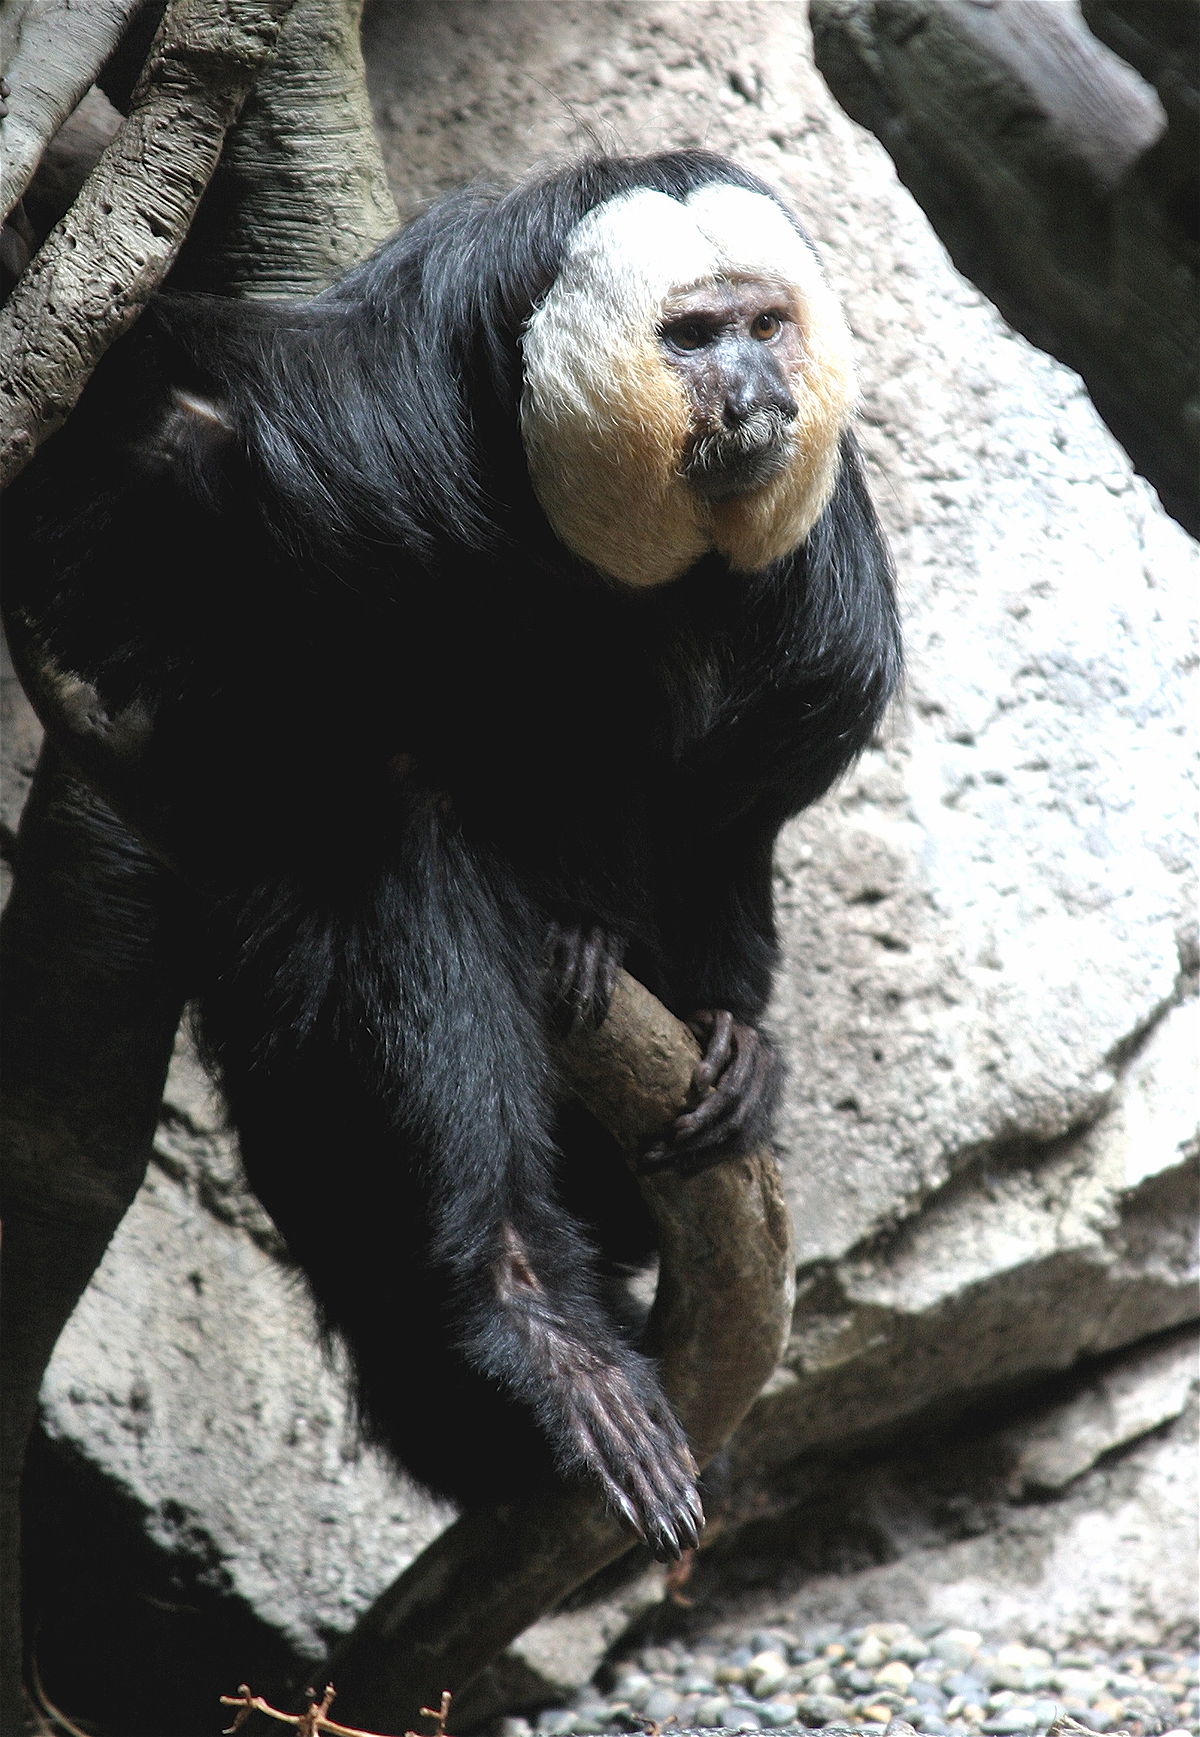 Saki monkey - Wikipedia